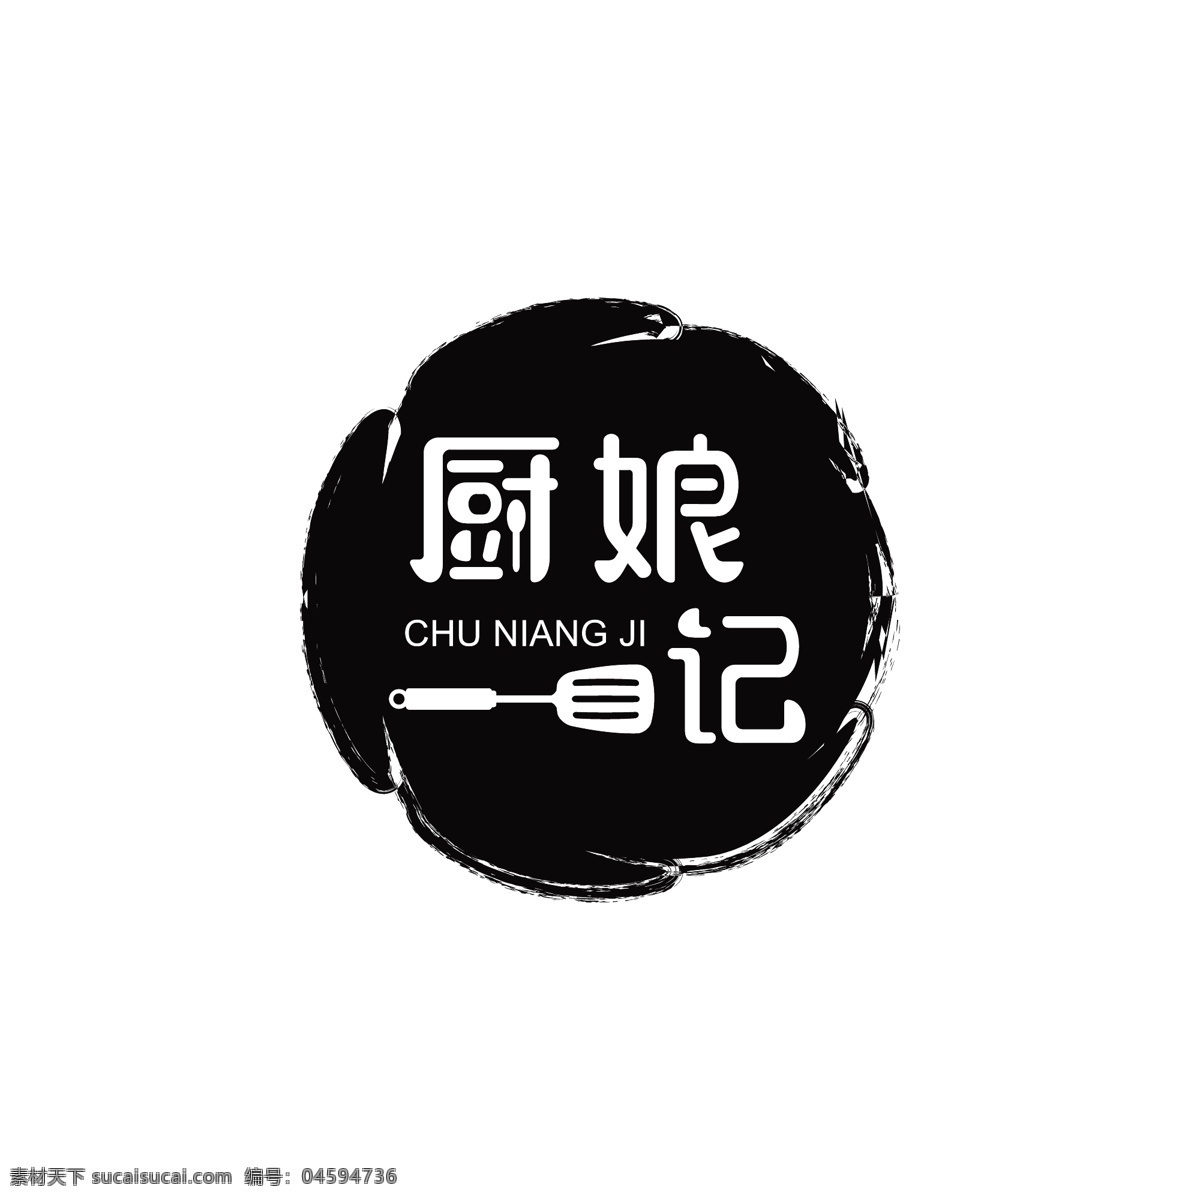 餐饮美食 logo 简约时尚 餐饮logo 美食logo 图标logo logo设计 标识设计 标志 ai矢量